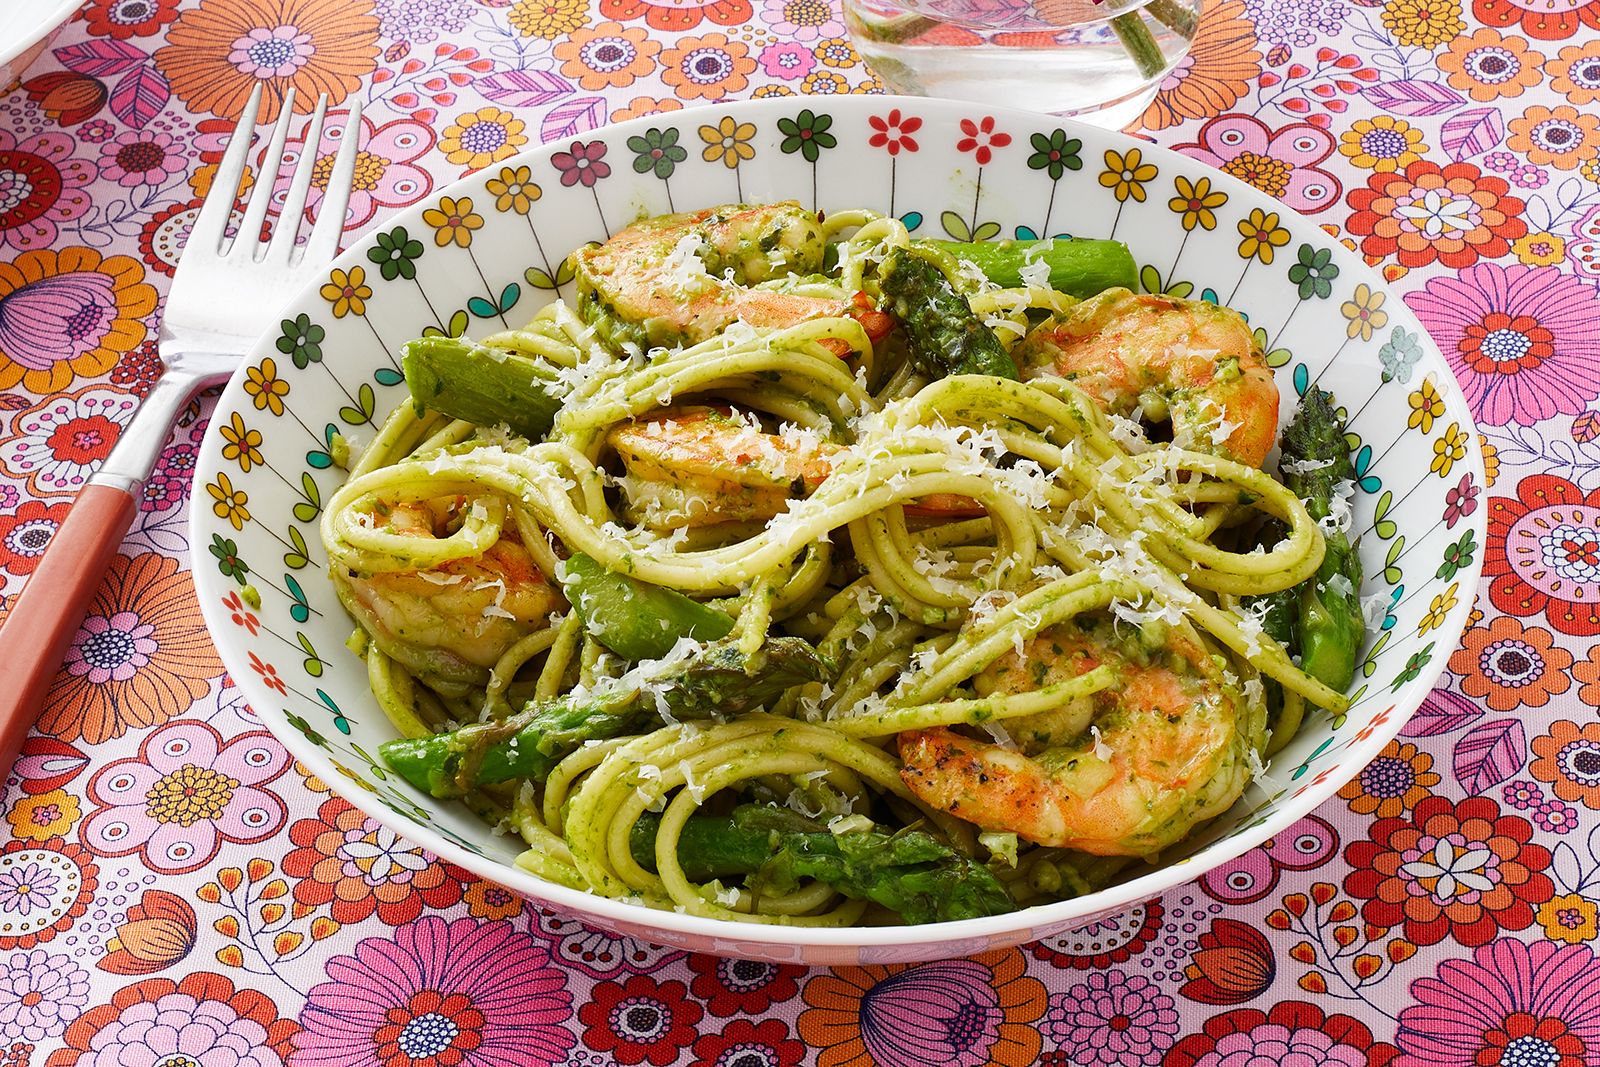 Shrimp Pesto Pasta Recipe - How to Make Shrimp Pesto Pasta